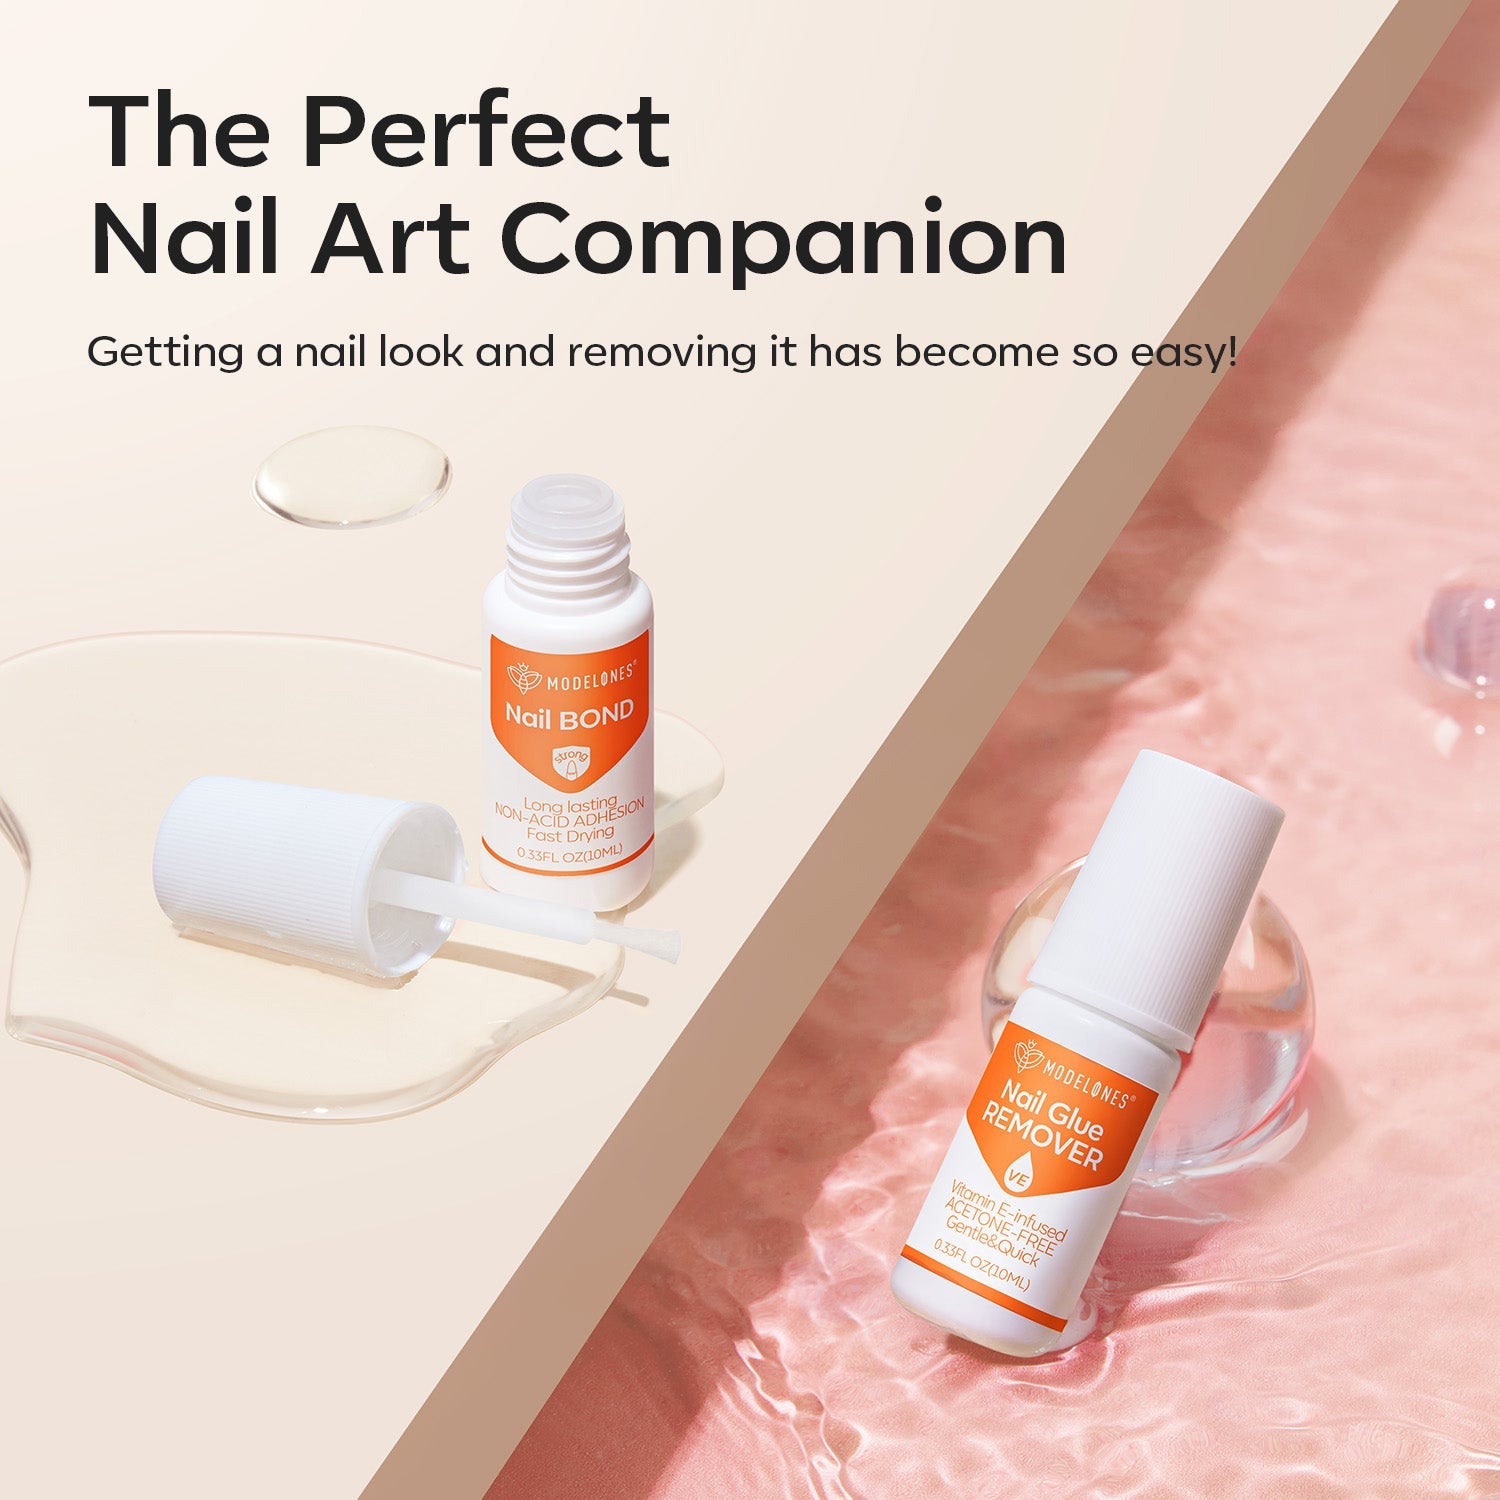 6Pcs Non-Acetone Nail Bond with Nail Glue Remover Kit